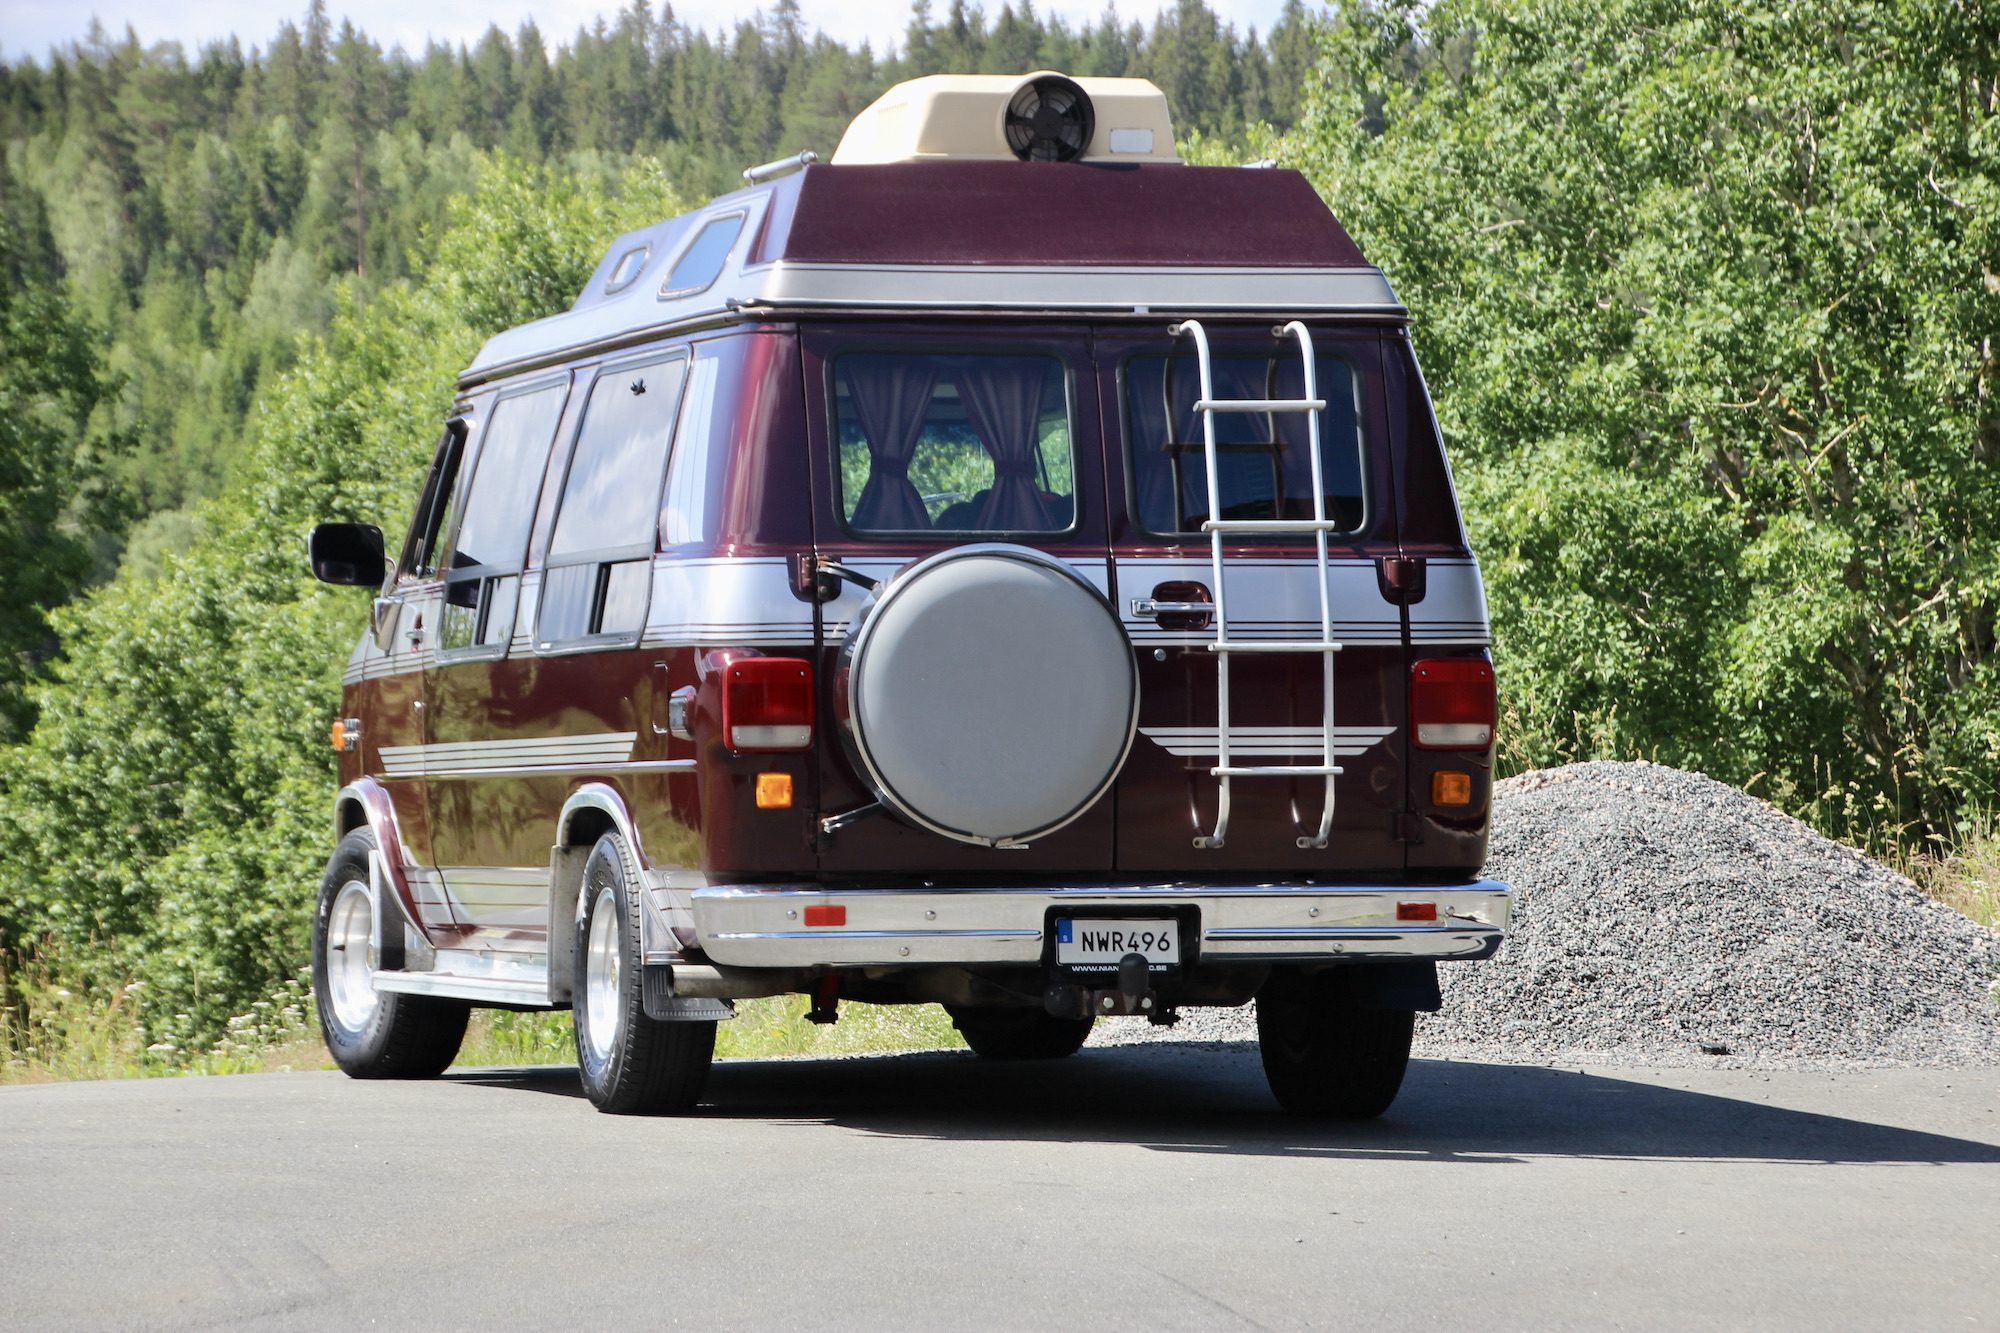 Superfin G20 Van som är Campinginredd!
Jättefin röd plyschinredning med persienner och gardiner!

Pris: Såld!